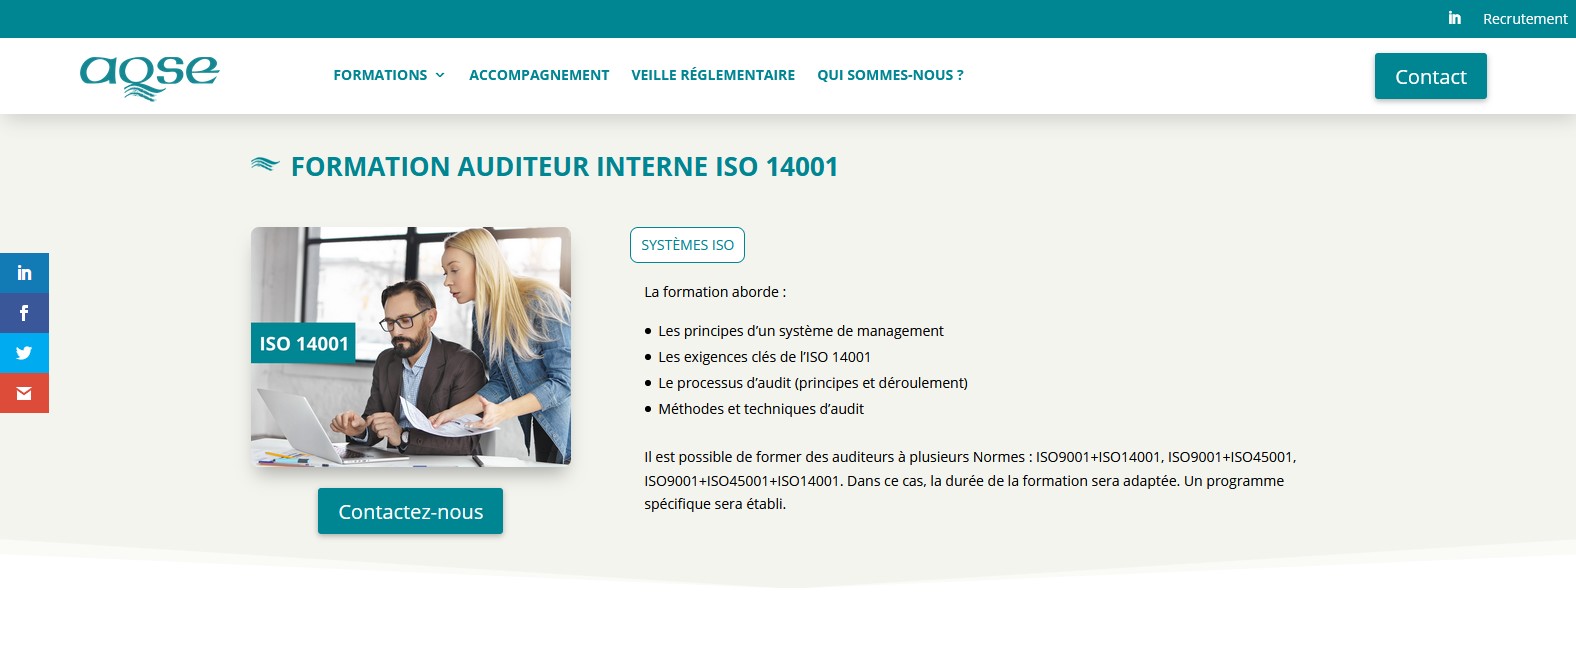 AQSE-France.fr Formation auditeur interne ISO 14001